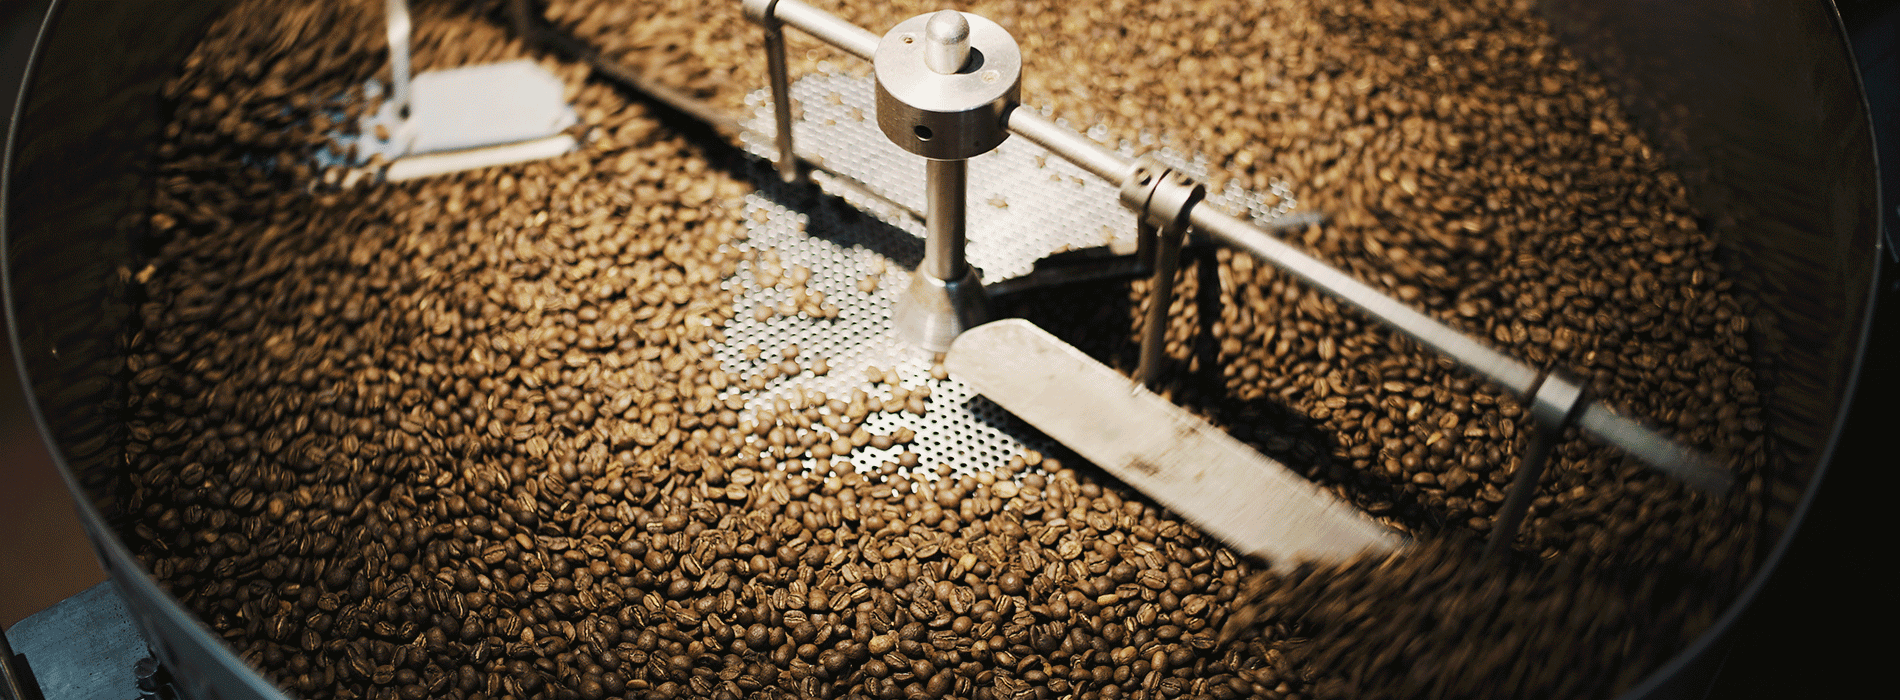 Exportaciones de café tostado superaron los US$40 millones a mayo de este año